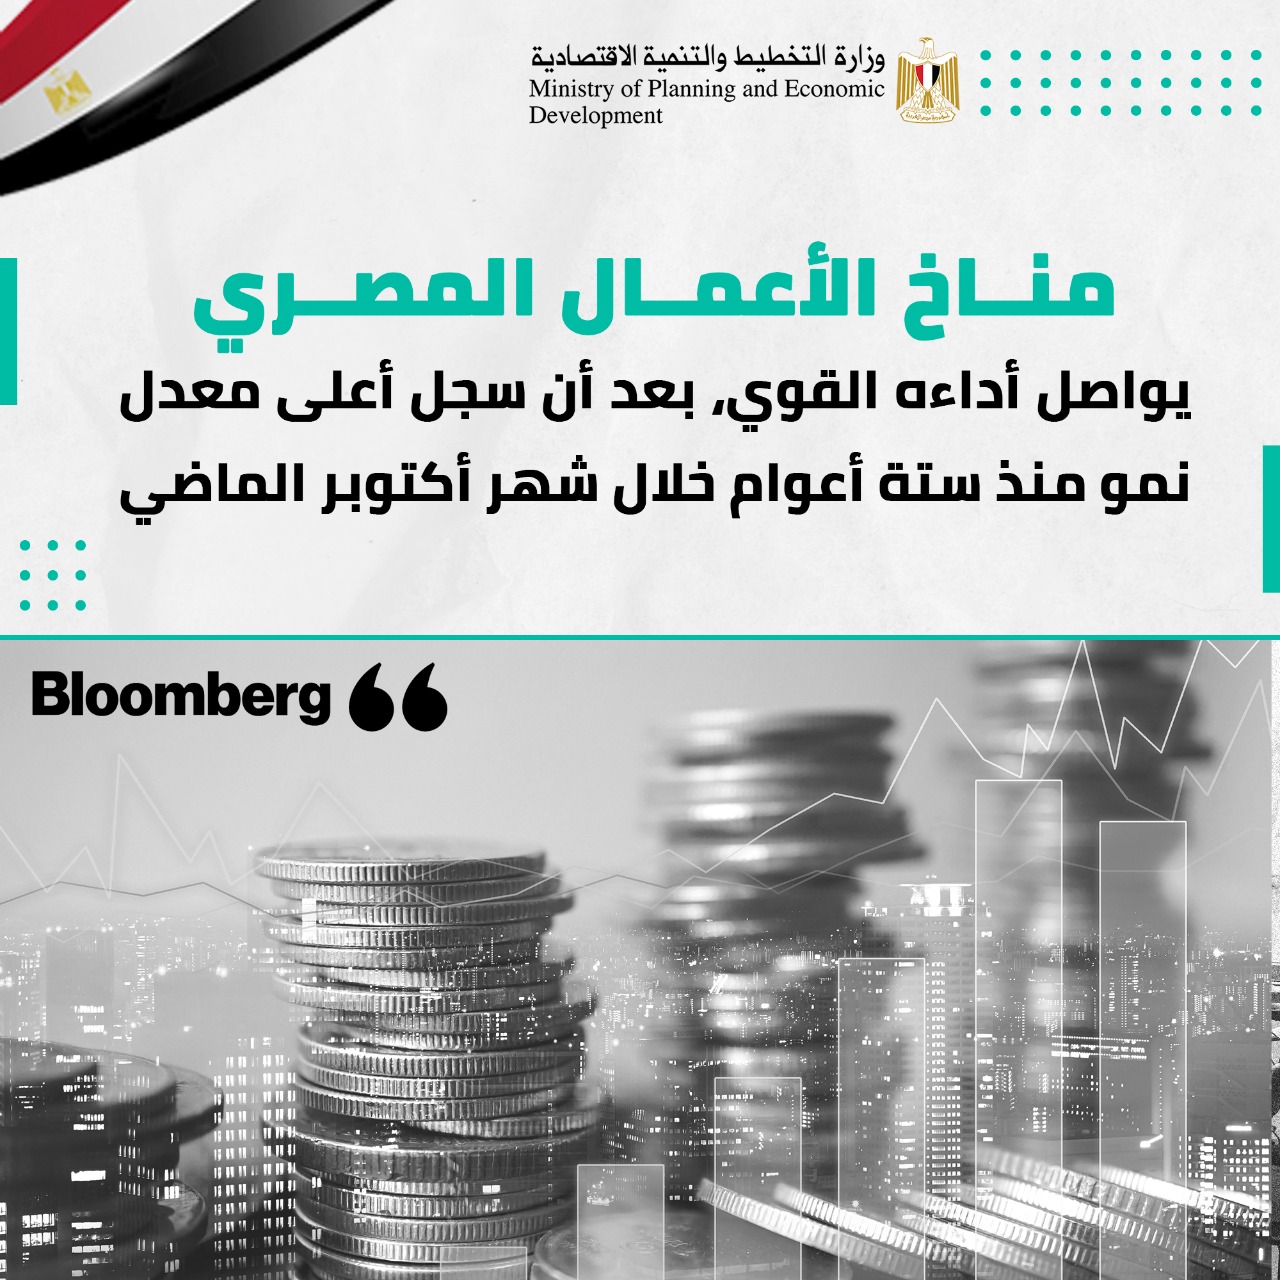 السعيد: تحقيق مصر معدلات نمو متقدمة انعكس على إشادات المؤسسات الدولية بالاقتصاد المصري 1